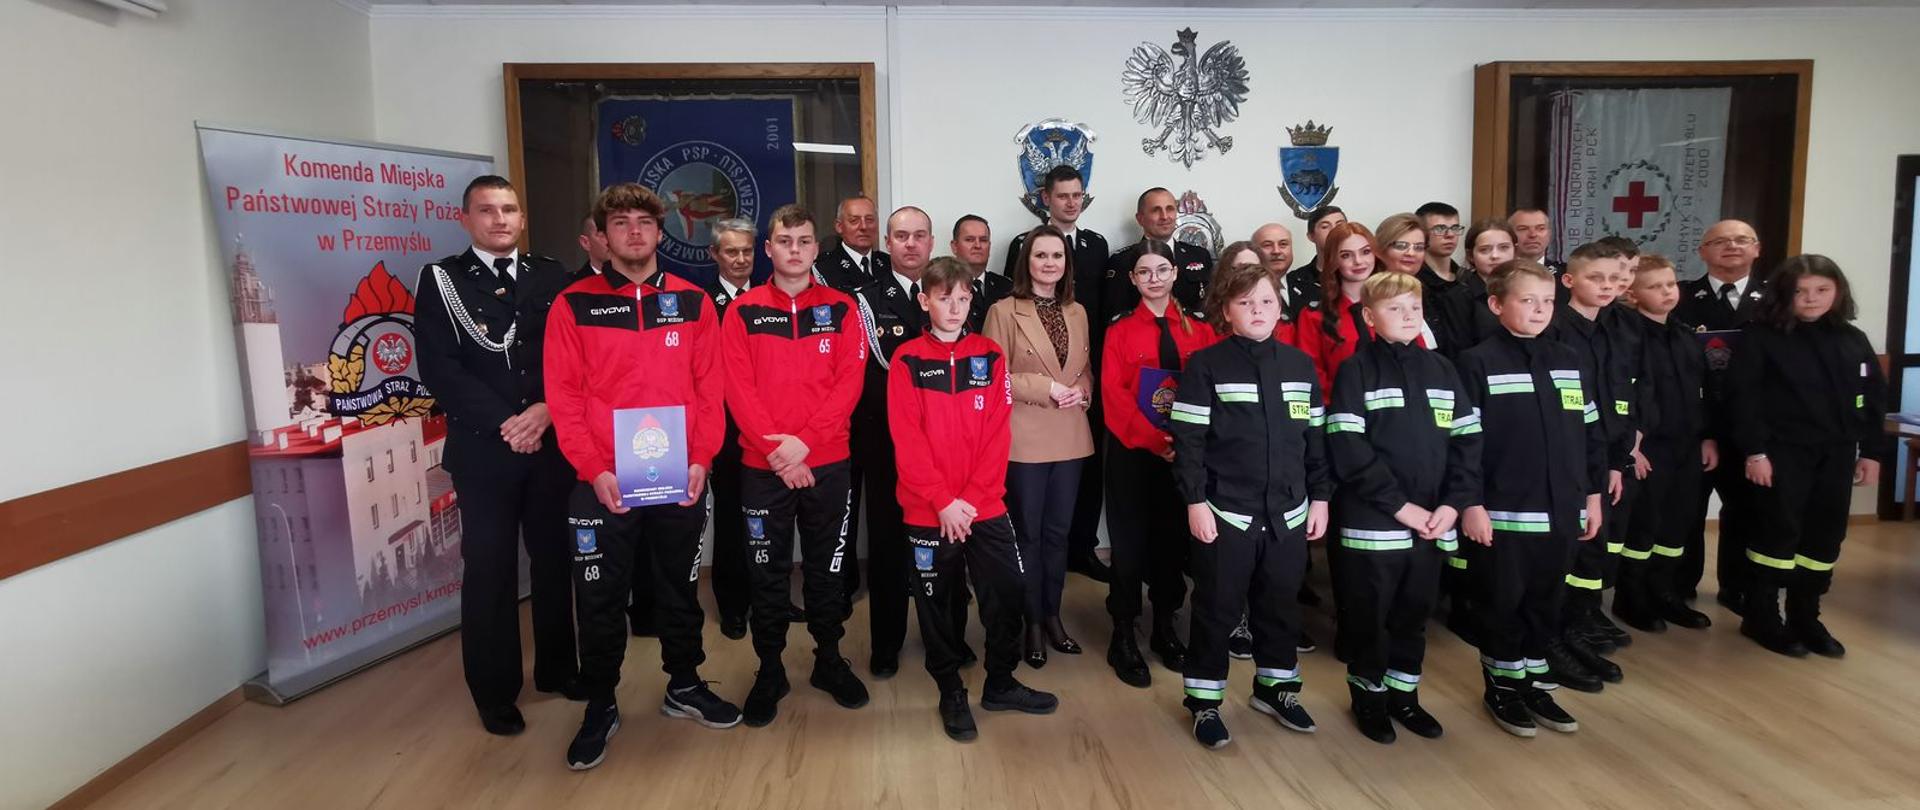 Na zdjęciu wręczanie promes na zakup sprzętu i wyposażenia osobistego dla członków Młodzieżowych Drużyn Pożarniczych z powiatu przemyskiego